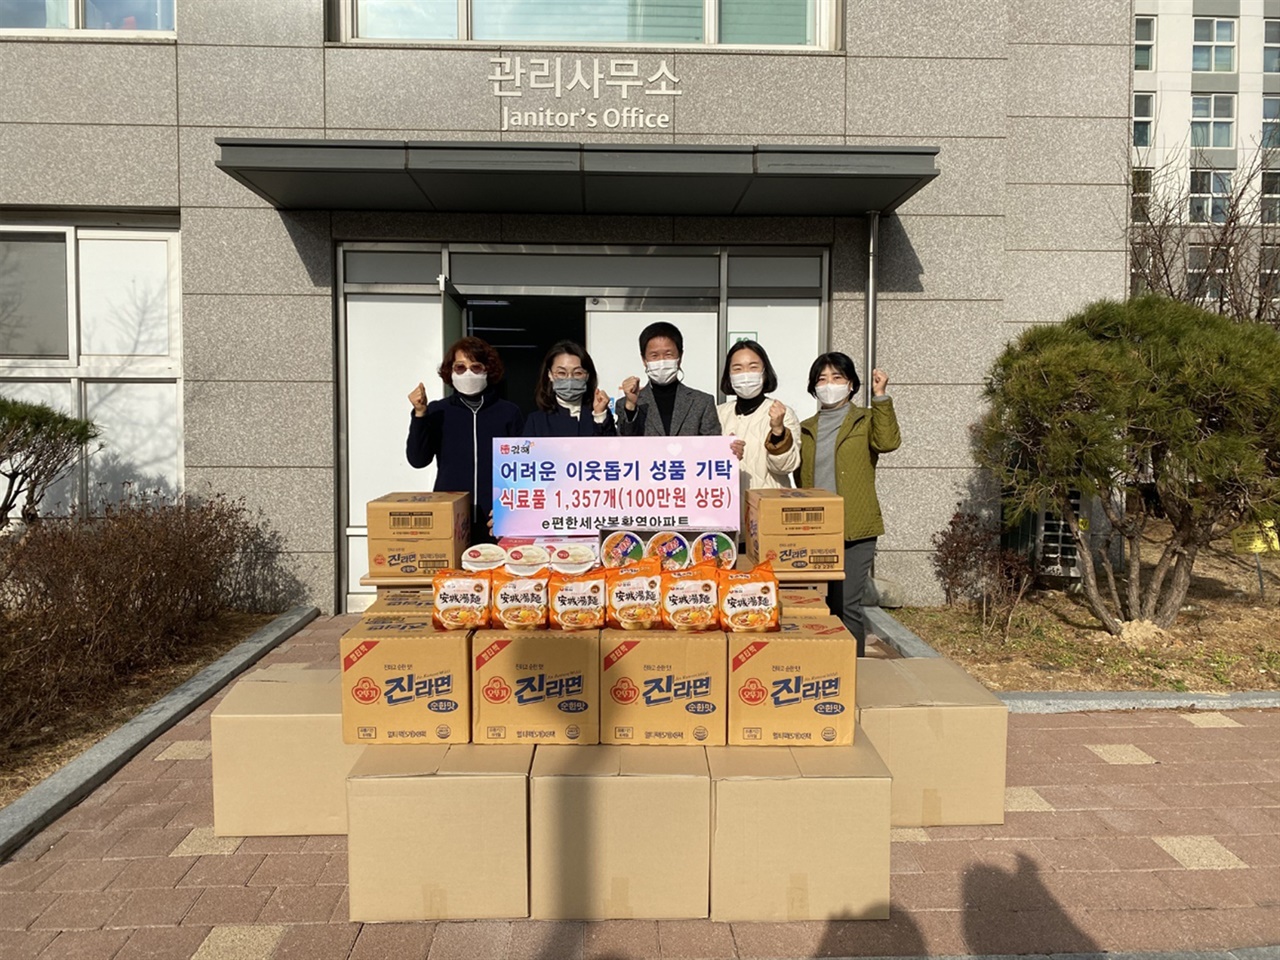 21년 1월 28일에 진행한 어려운 이웃돕기다. 간편식 기부를 통해 1357개(100만원) 상당의 물품을 기부했다.